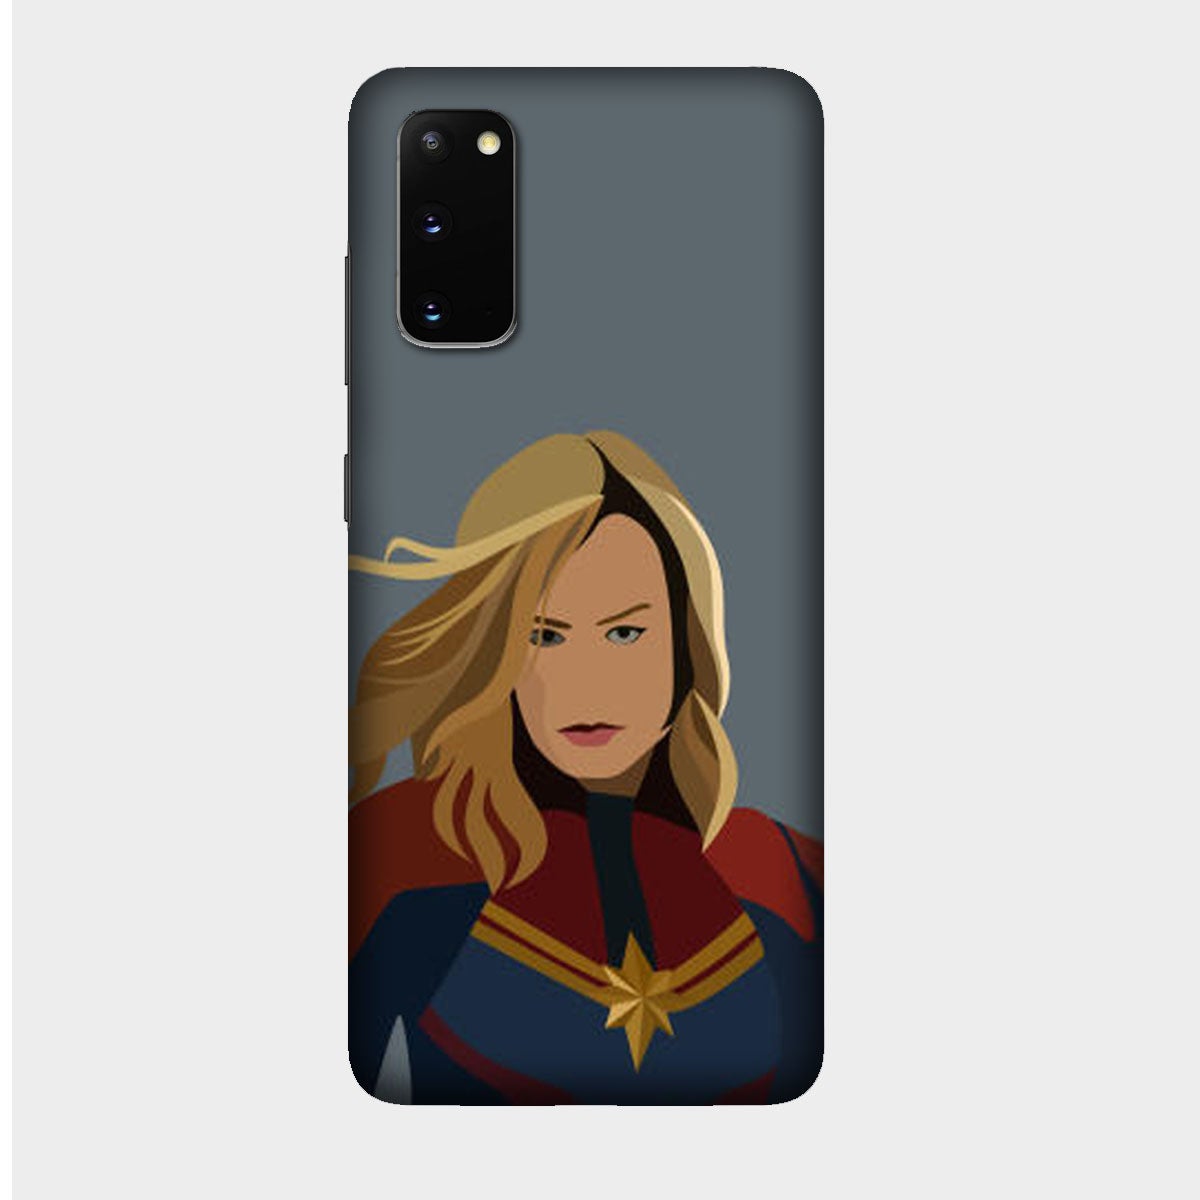 Captain Marvel - Avengers - Brie Larson - Mobile Phone Cover - Hard Case - Samsung - Samsung